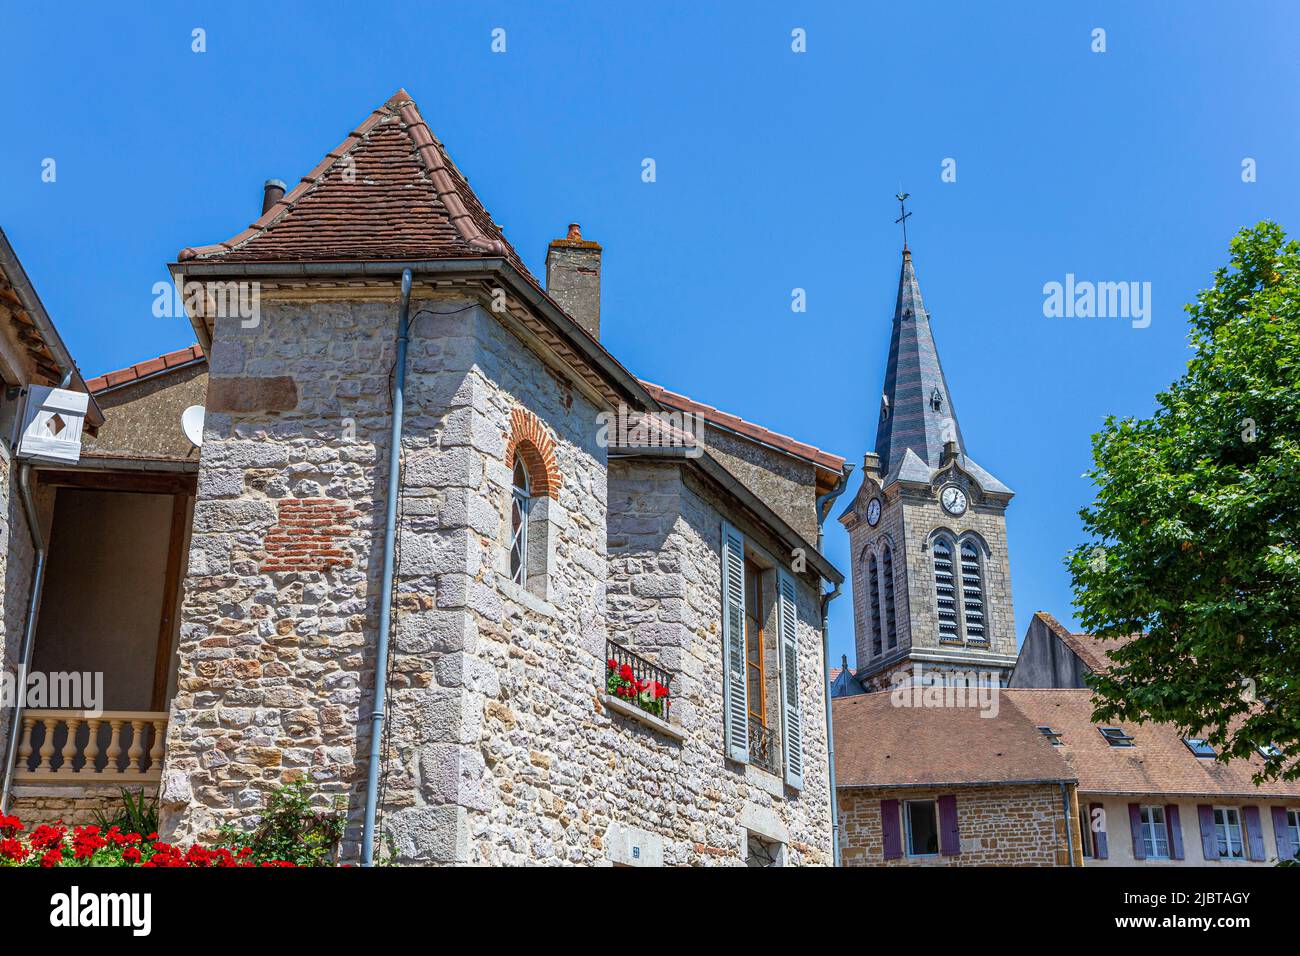 France, Saone-et-Loire, village of Cuiseaux Stock Photo